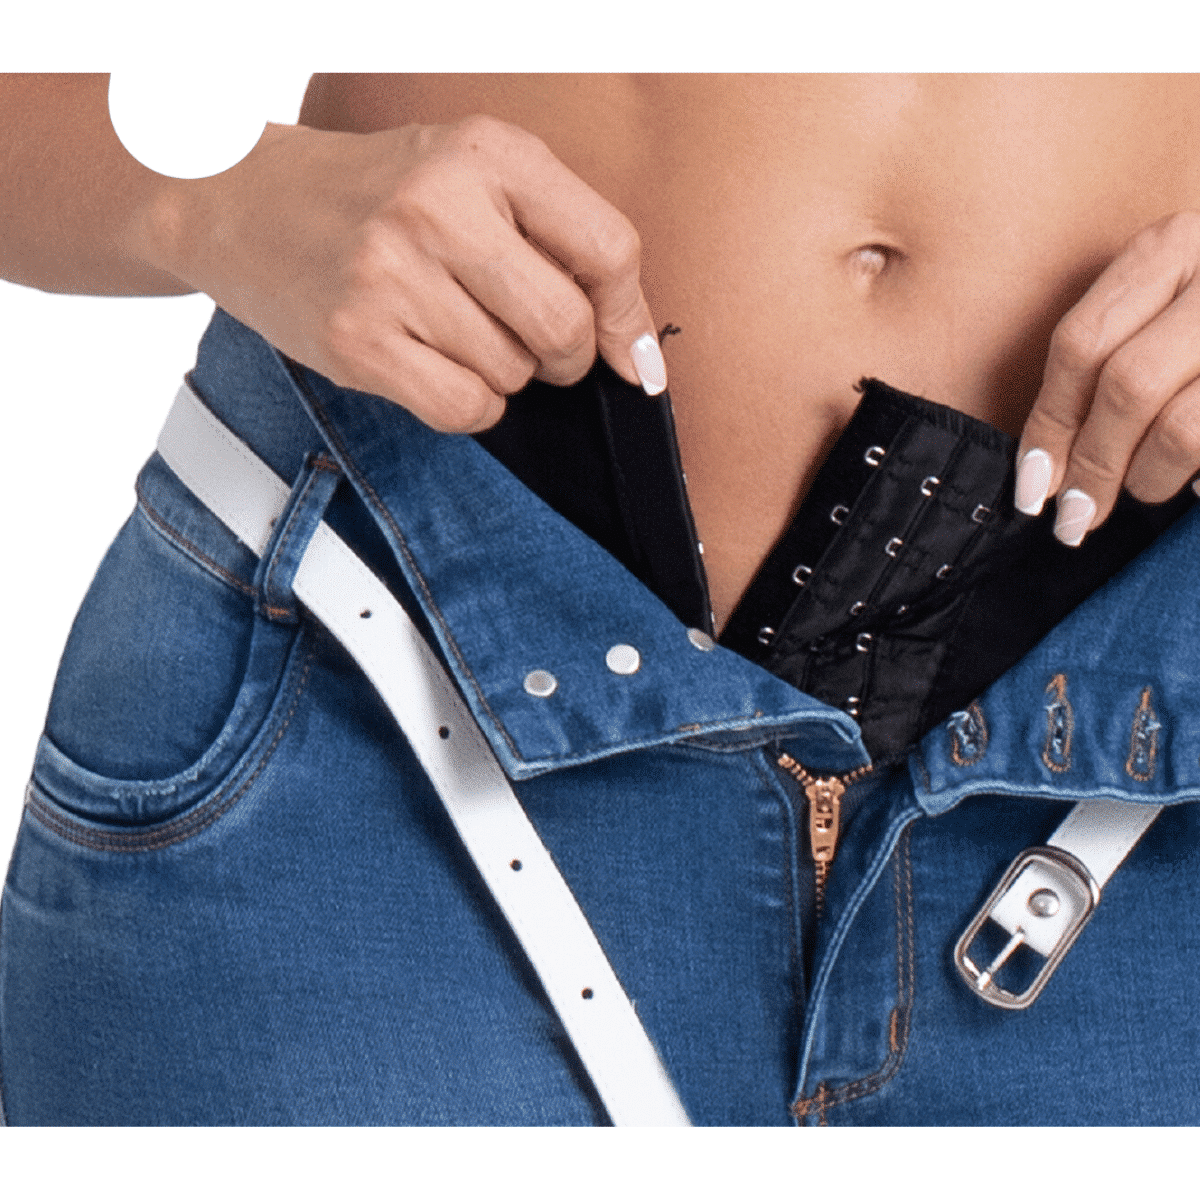 Jeans Con Faja Interna / Control de Abdomen - 526 - Ropa Colombiana